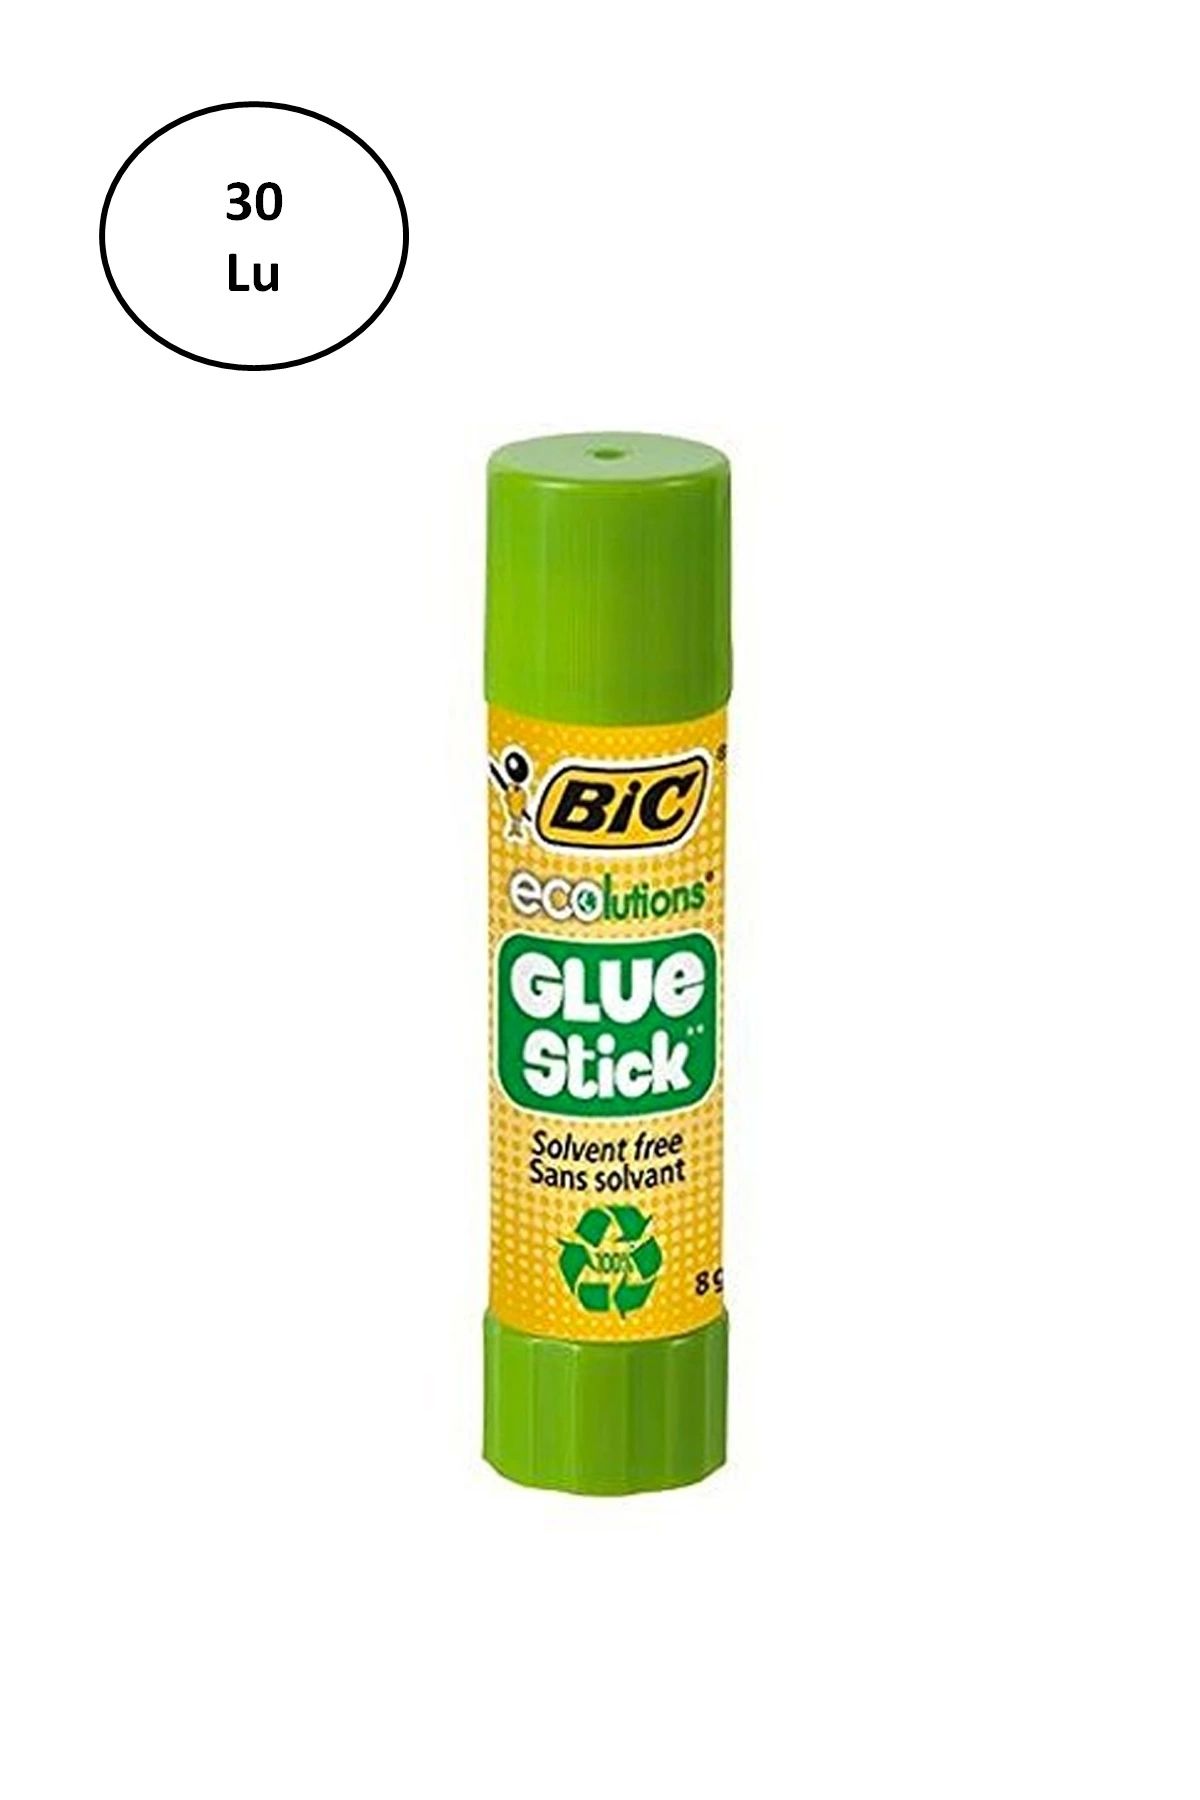 Bic Ecolutions Glue Stick Yapıştırıcı 8 gr 30'lu